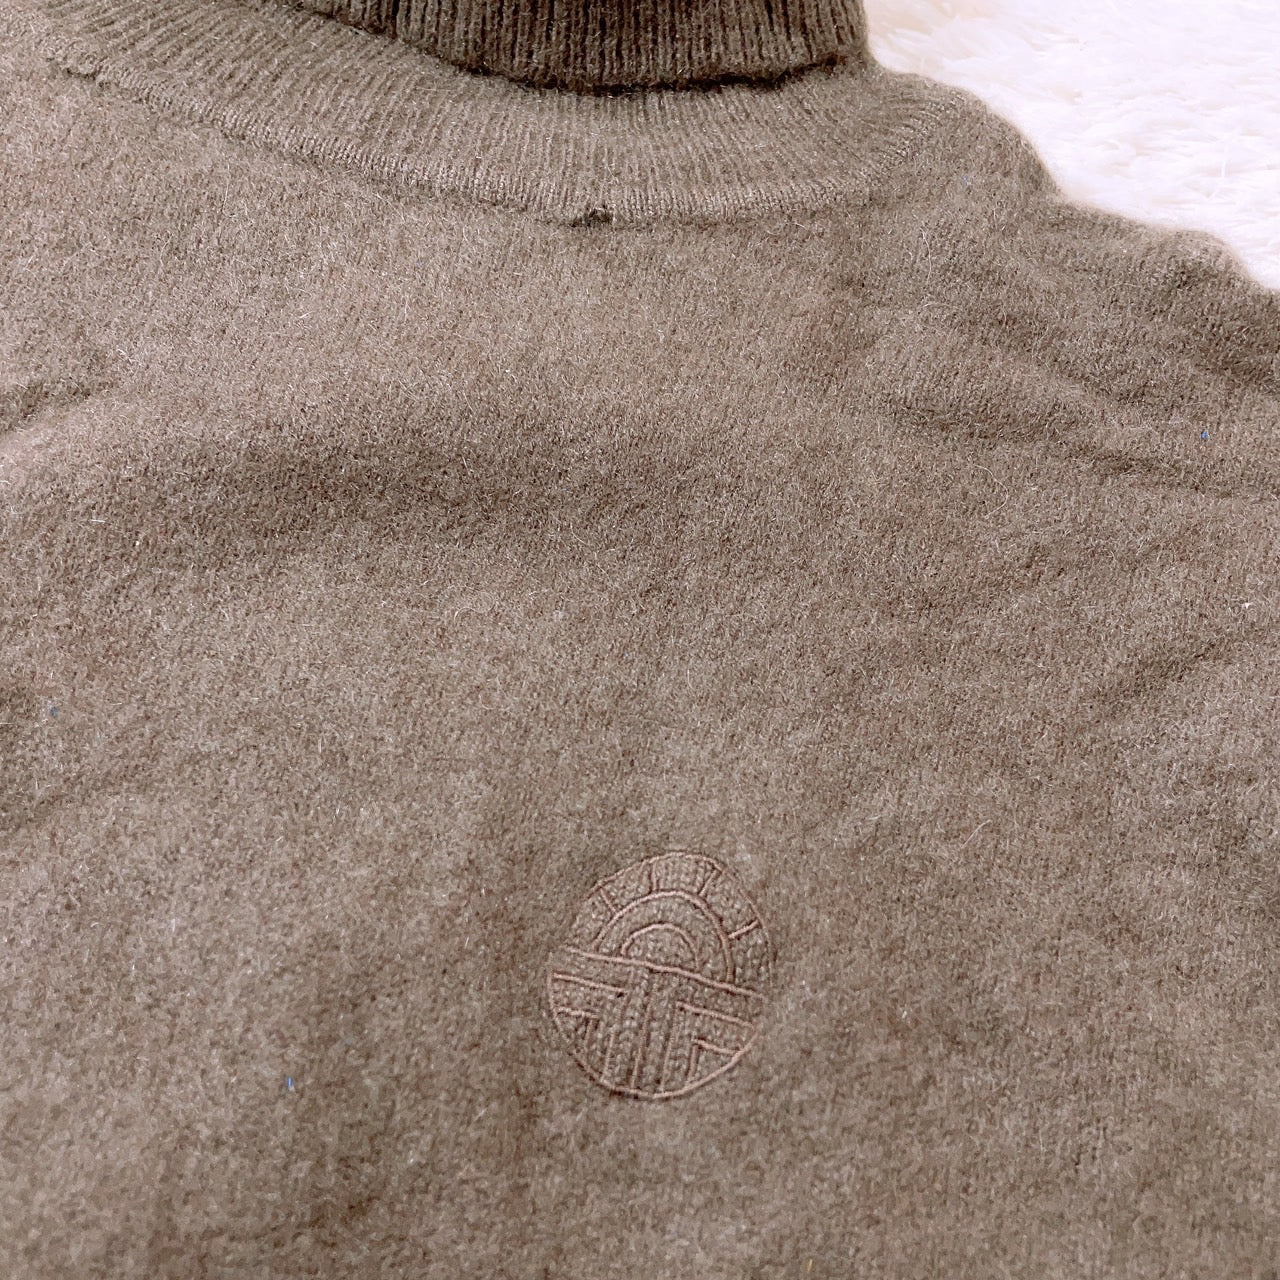 【26119】 セーター ブラウン サイズM相当 カシミヤセーター プルオーバー タートルネック 長袖 カジュアル シンプル レディース